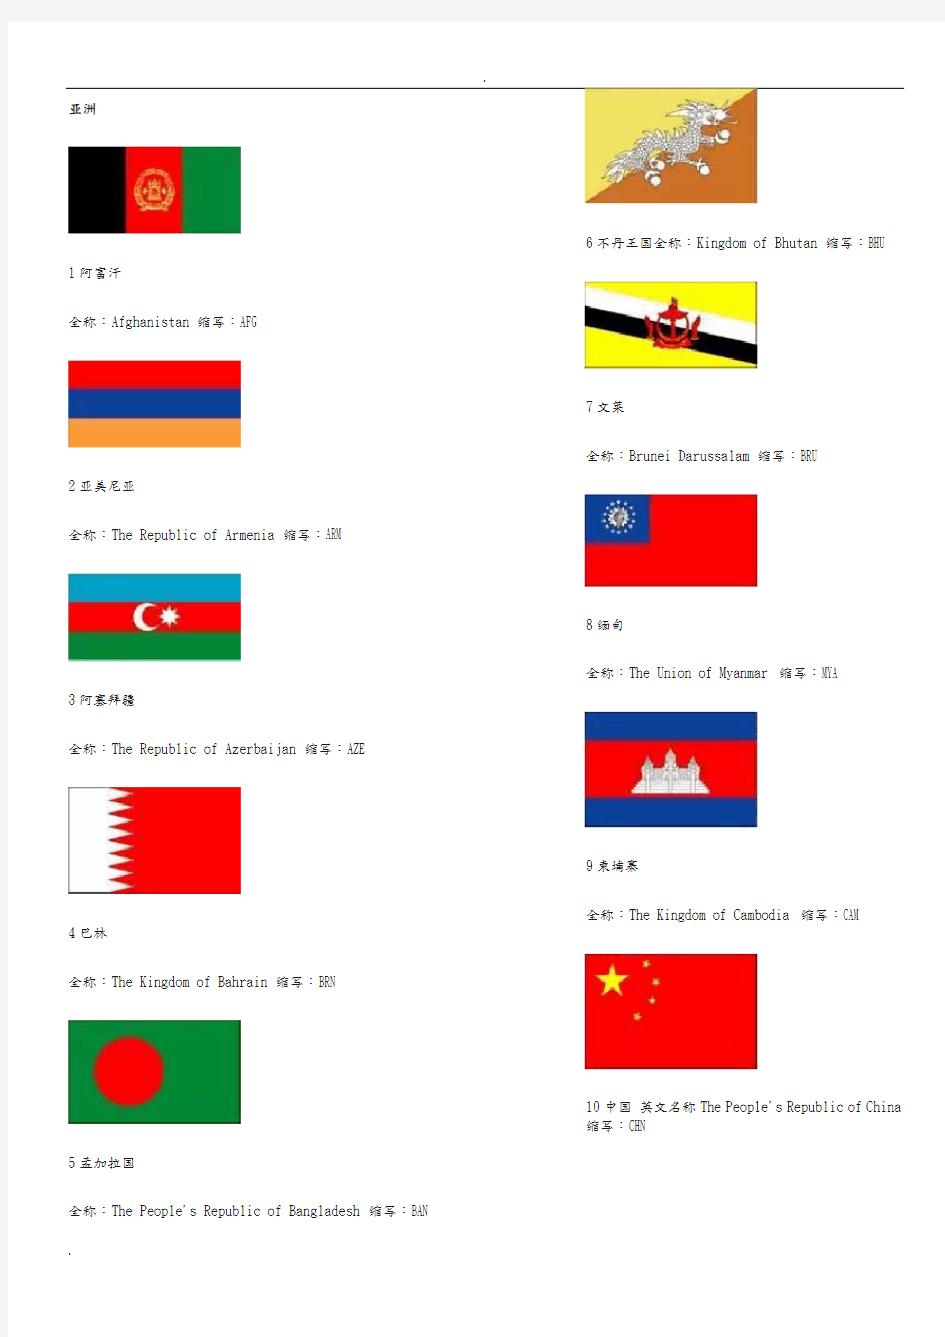 世界各国国旗图片+英文名称及缩写(珍藏版)